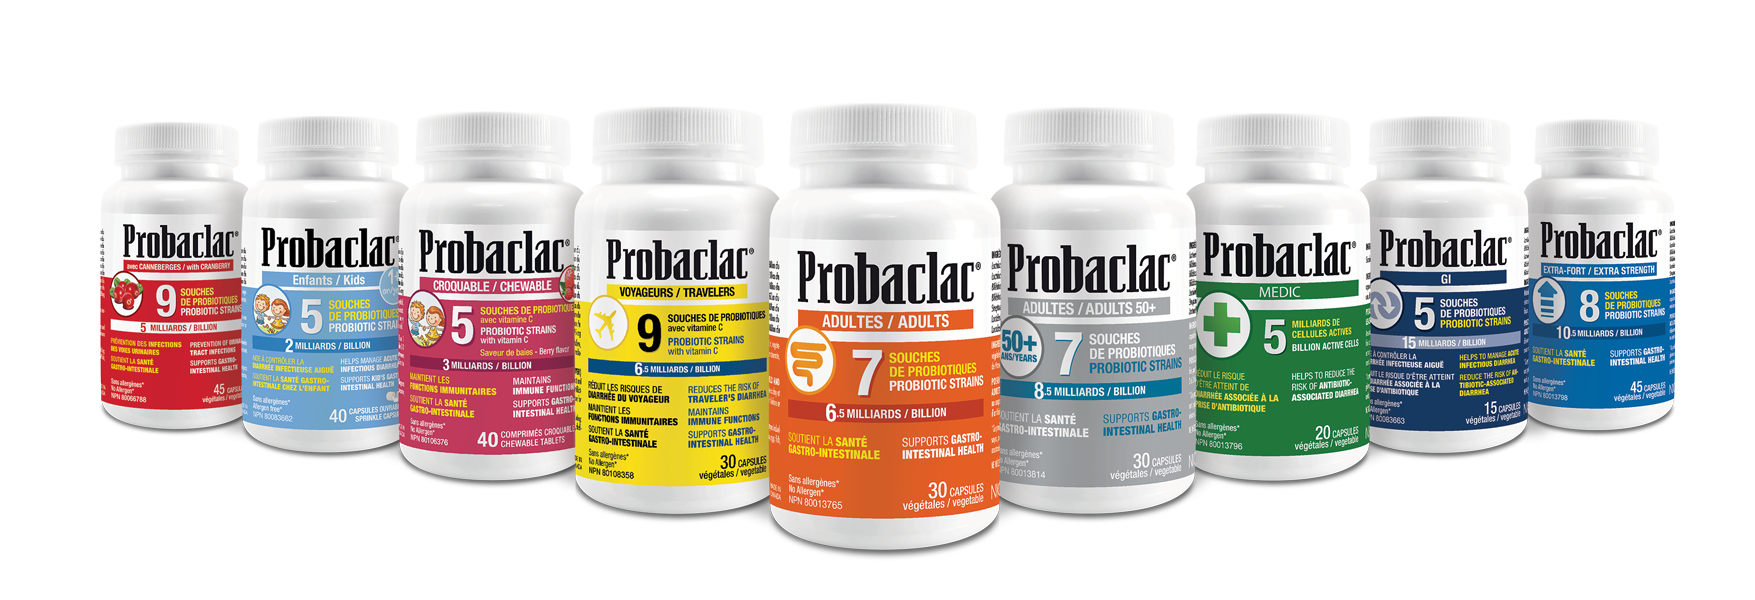 Probaclac Probiotics